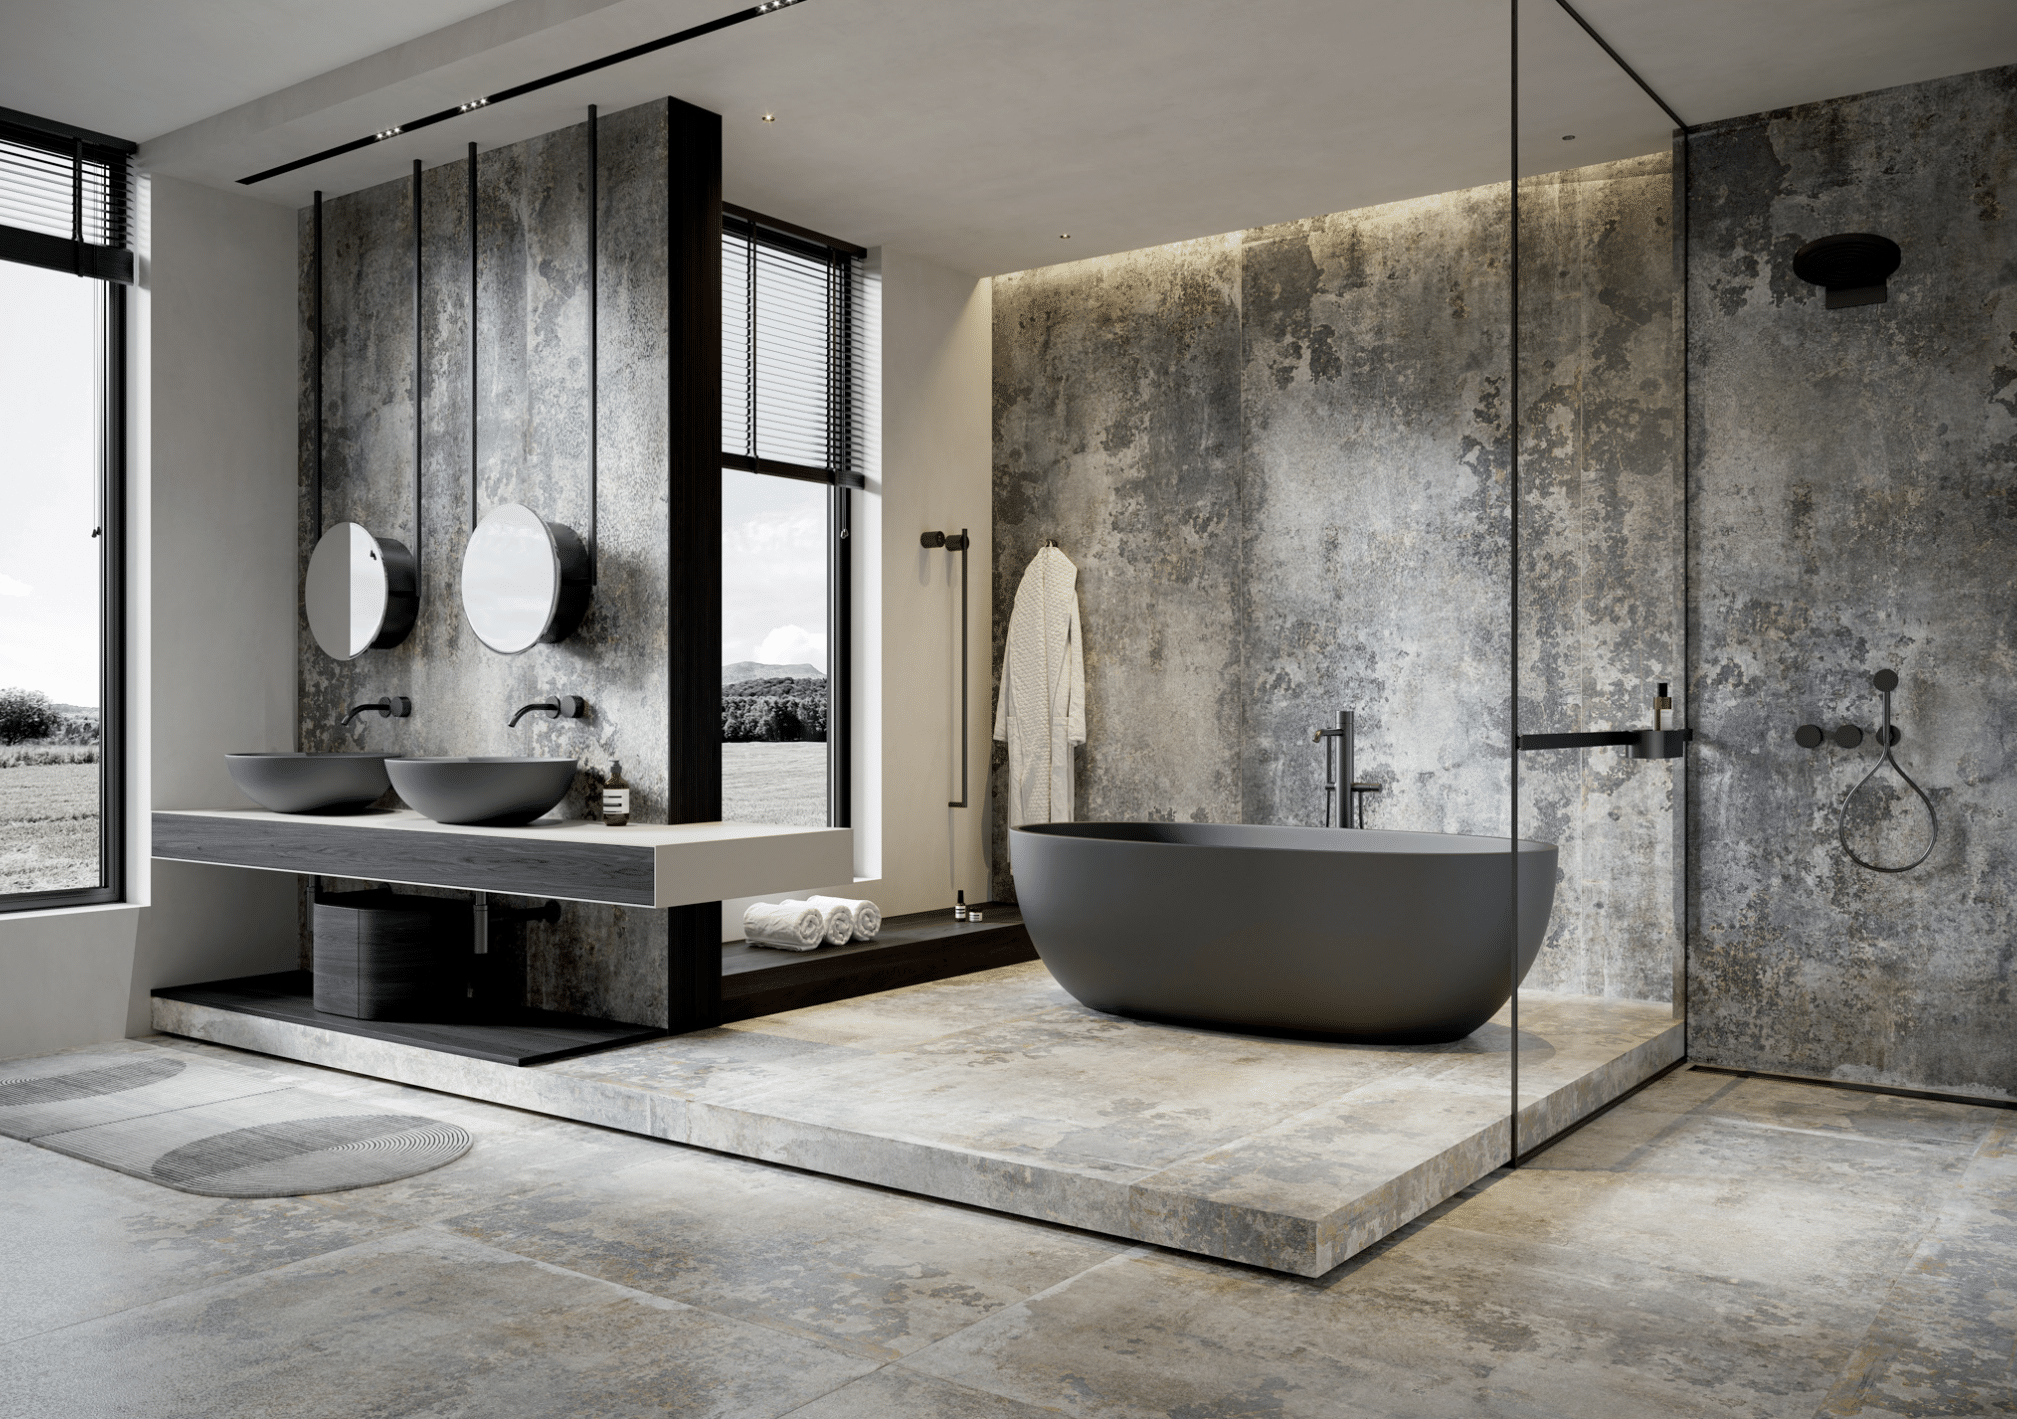 C. Bergmann zeigt ein Badezimmer mit XXL-Fliesen in dunklegrau-weiß, Doppelwaschtisch, freistehender Badewanne und Glastrennung von Cerrad.